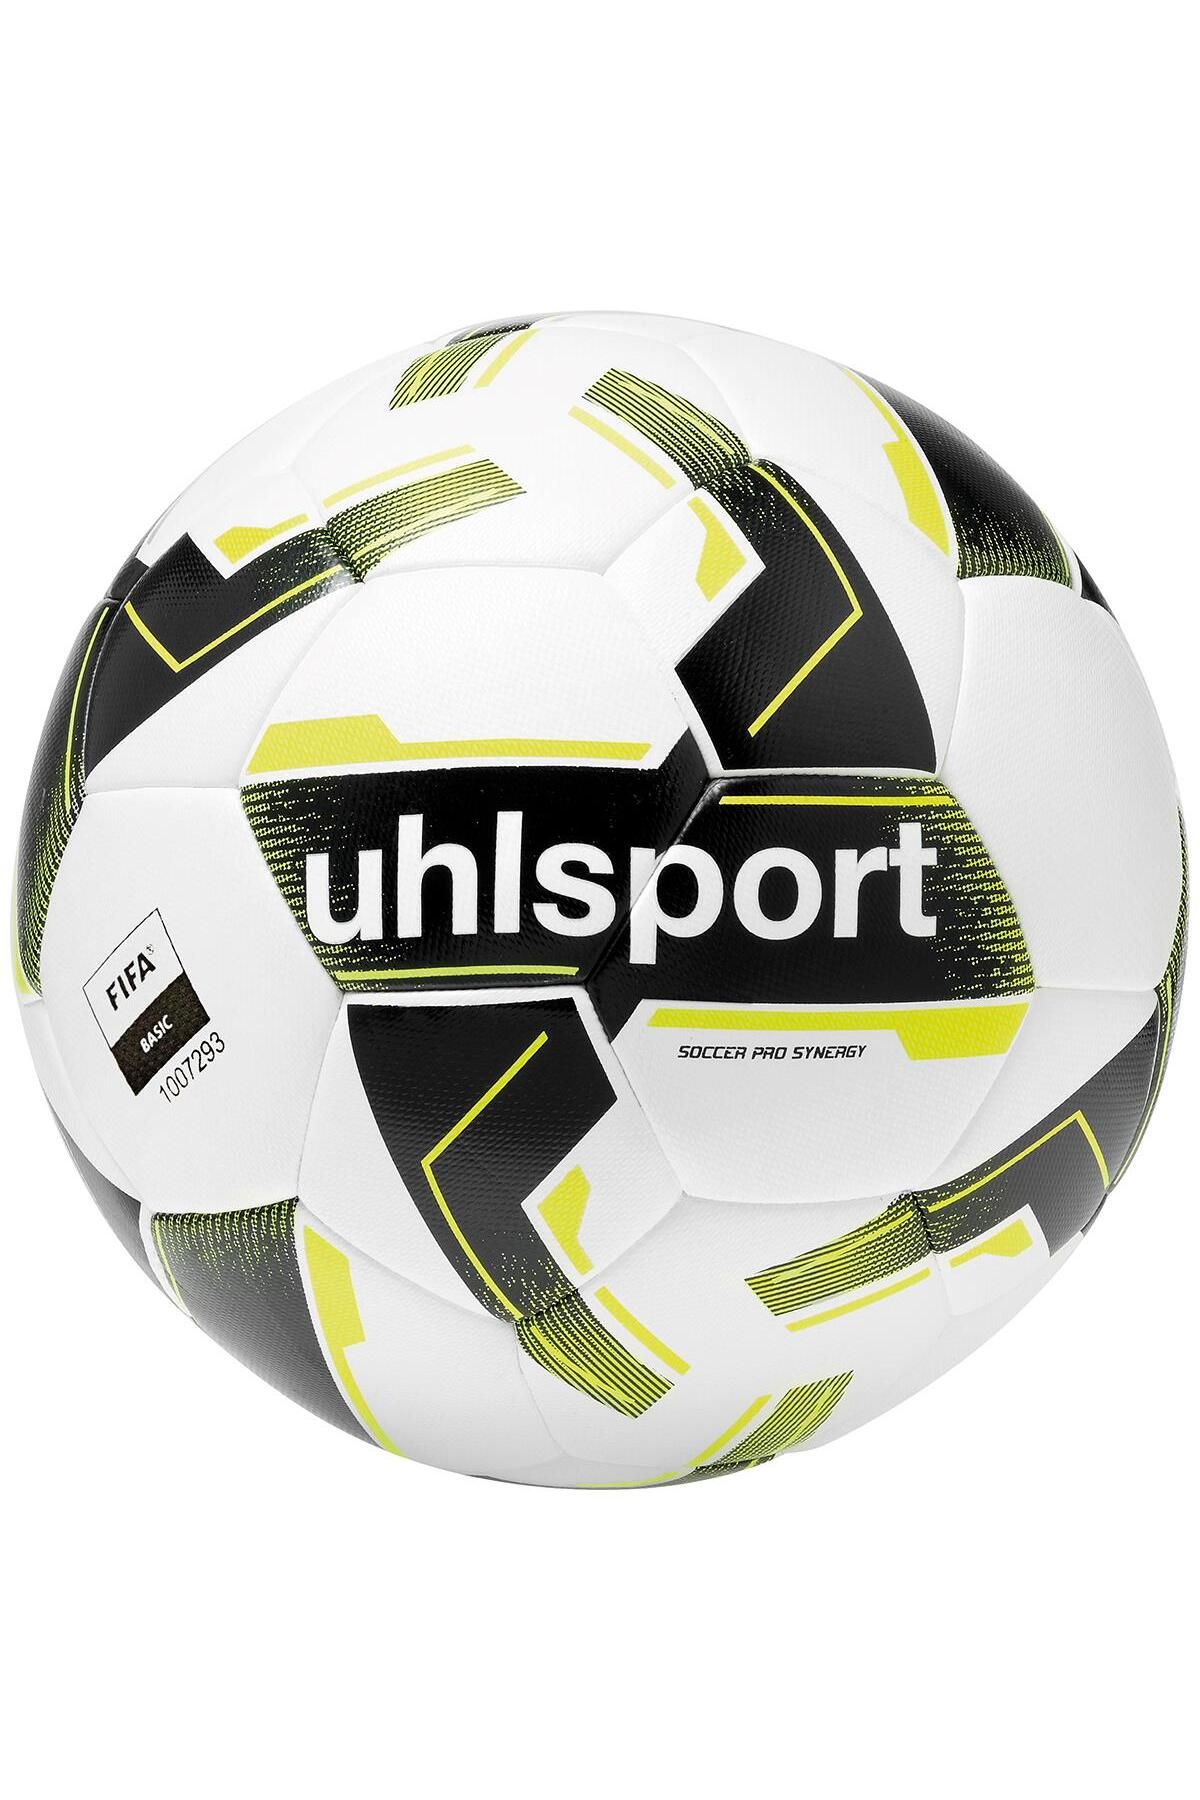 uhlsport Uhlshport 100171901 Soccer Pro Synergy Beyaz Futbol Topu